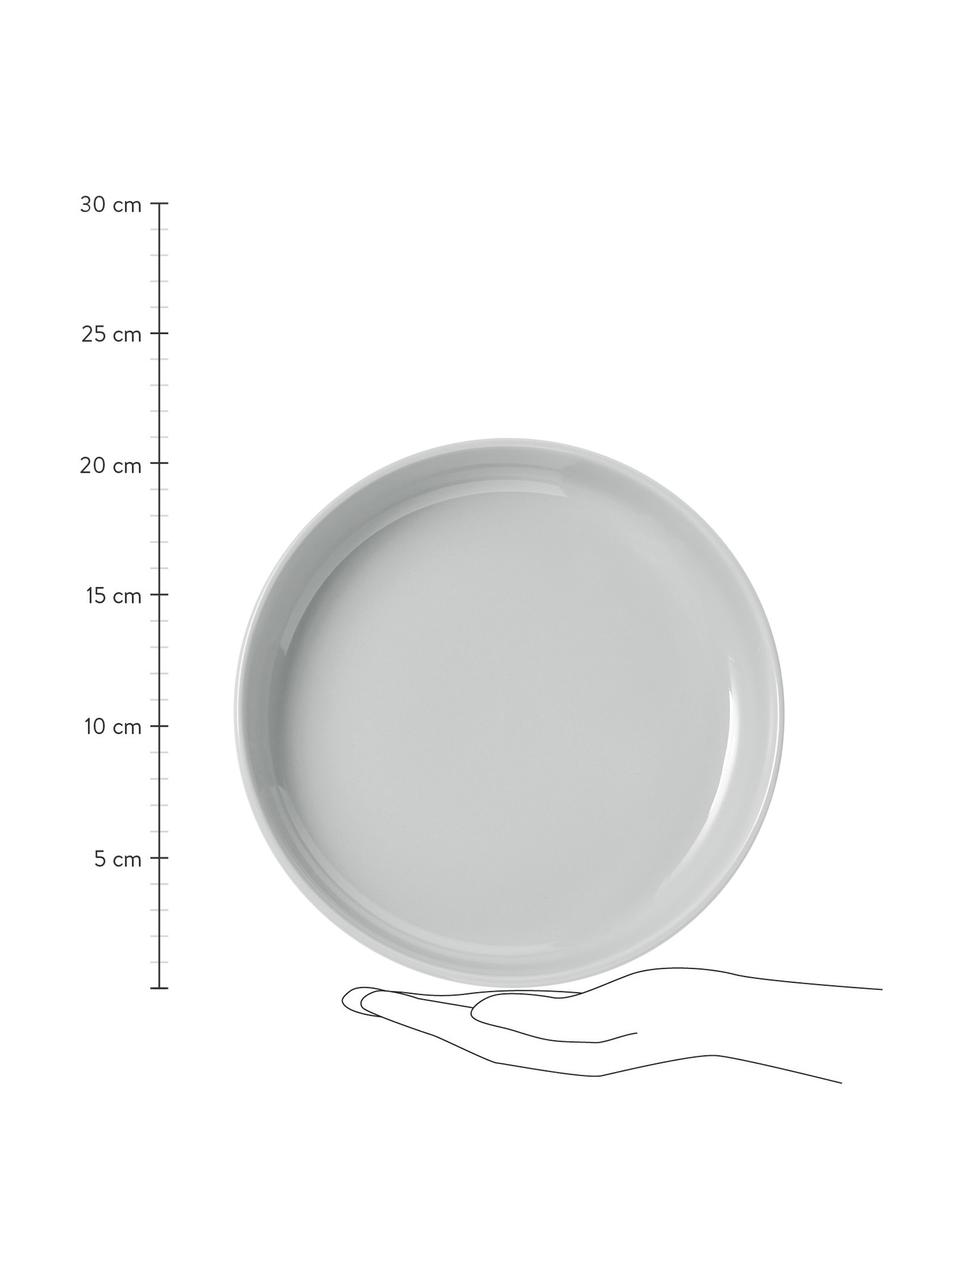 Piatto fondo in porcellana Nessa 4 pz, Porcellana a pasta dura di alta qualità, Grigio chiaro, Ø 21 cm